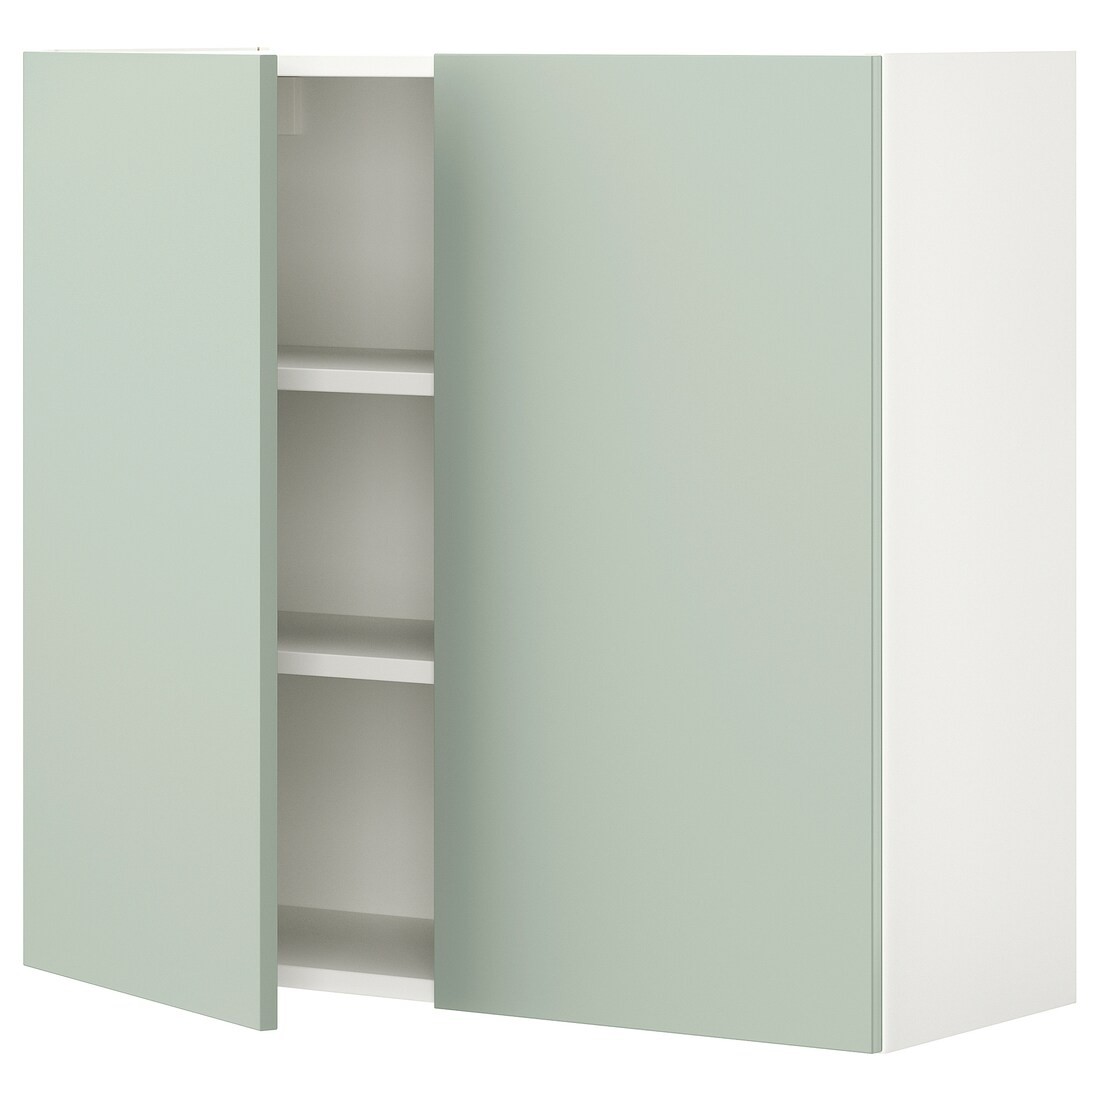 IKEA ENHET ЭНХЕТ Навесной шкаф с 2 полками / дверцами, белый / бледный серо-зеленый, 80x32x75 см 99496799 994.967.99